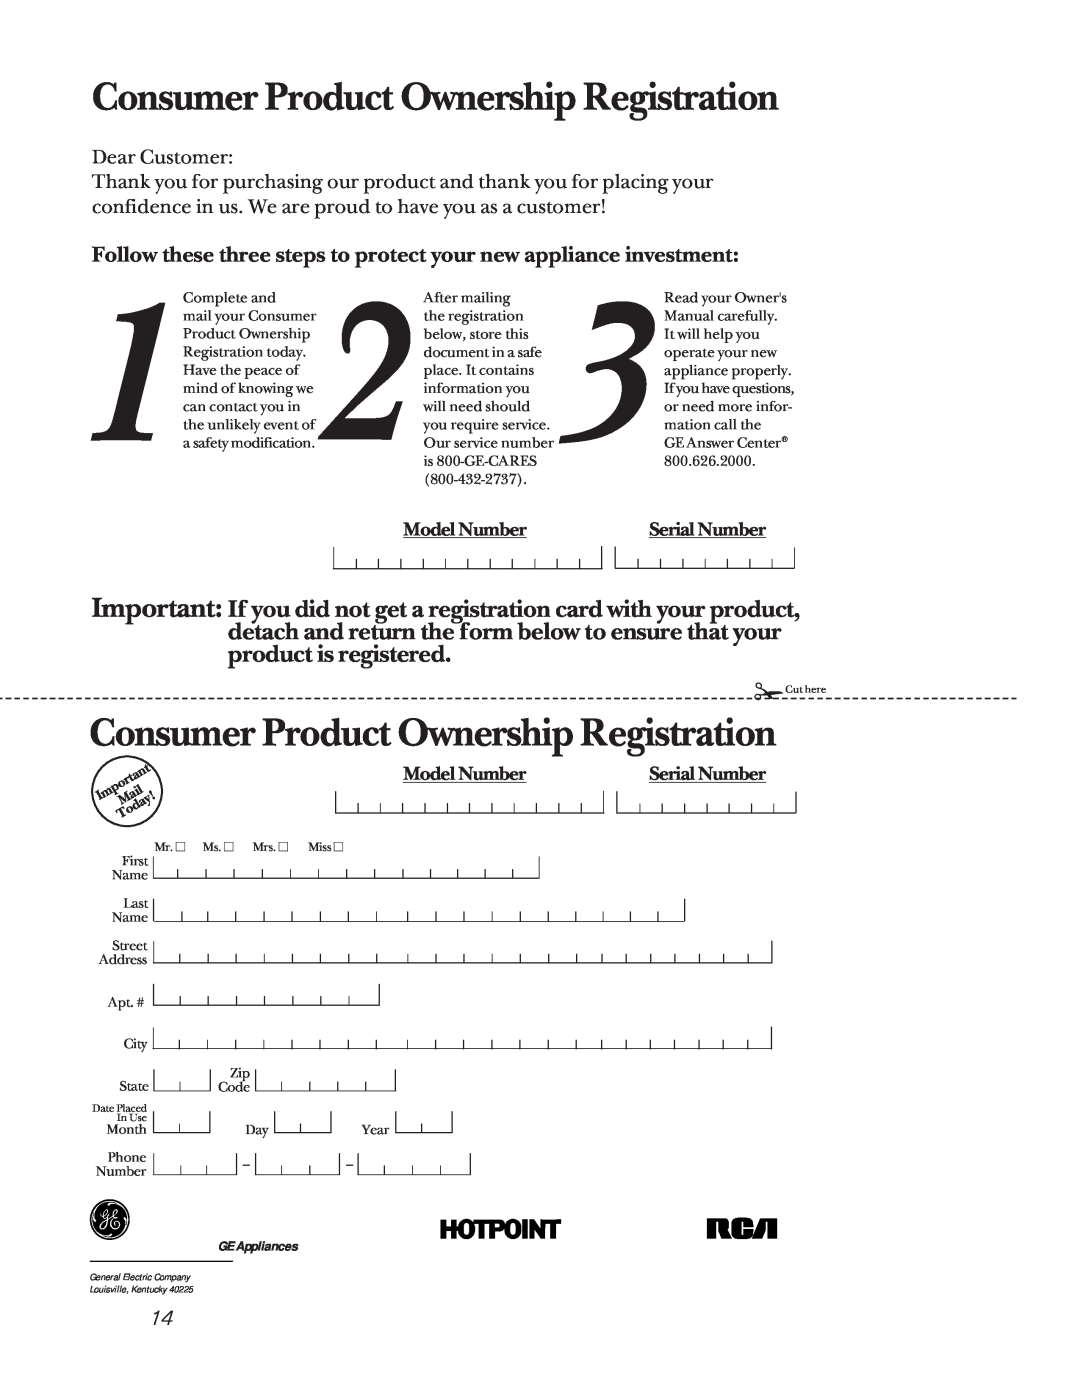 GE JPG636, JPG930, JPG336, JPG326, JGP626 Consumer Product Ownership Registration, Model Number, Serial Number, GE Appliances 